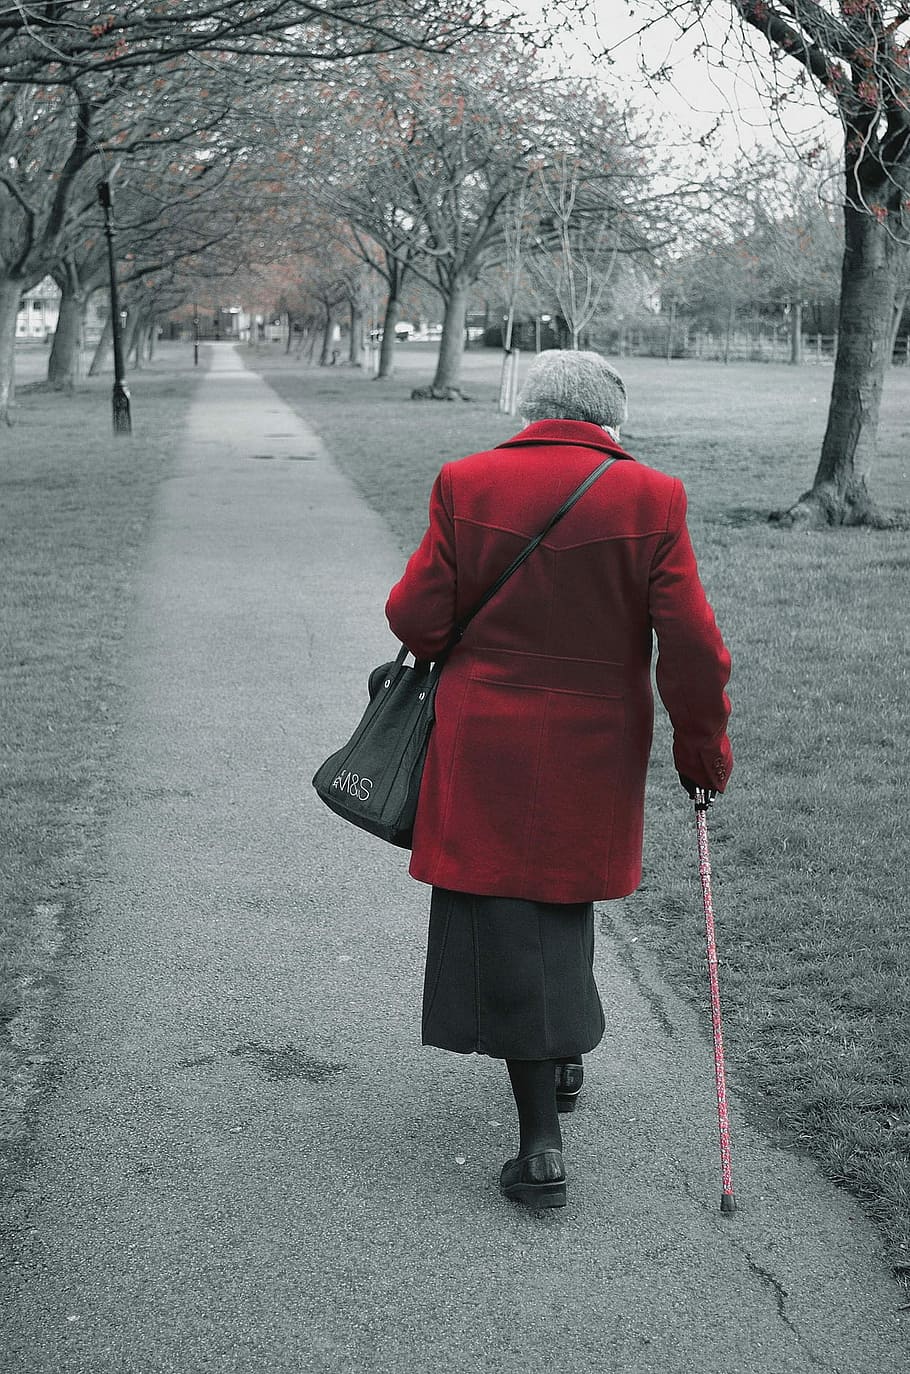 walking-old-people-coat.jpg